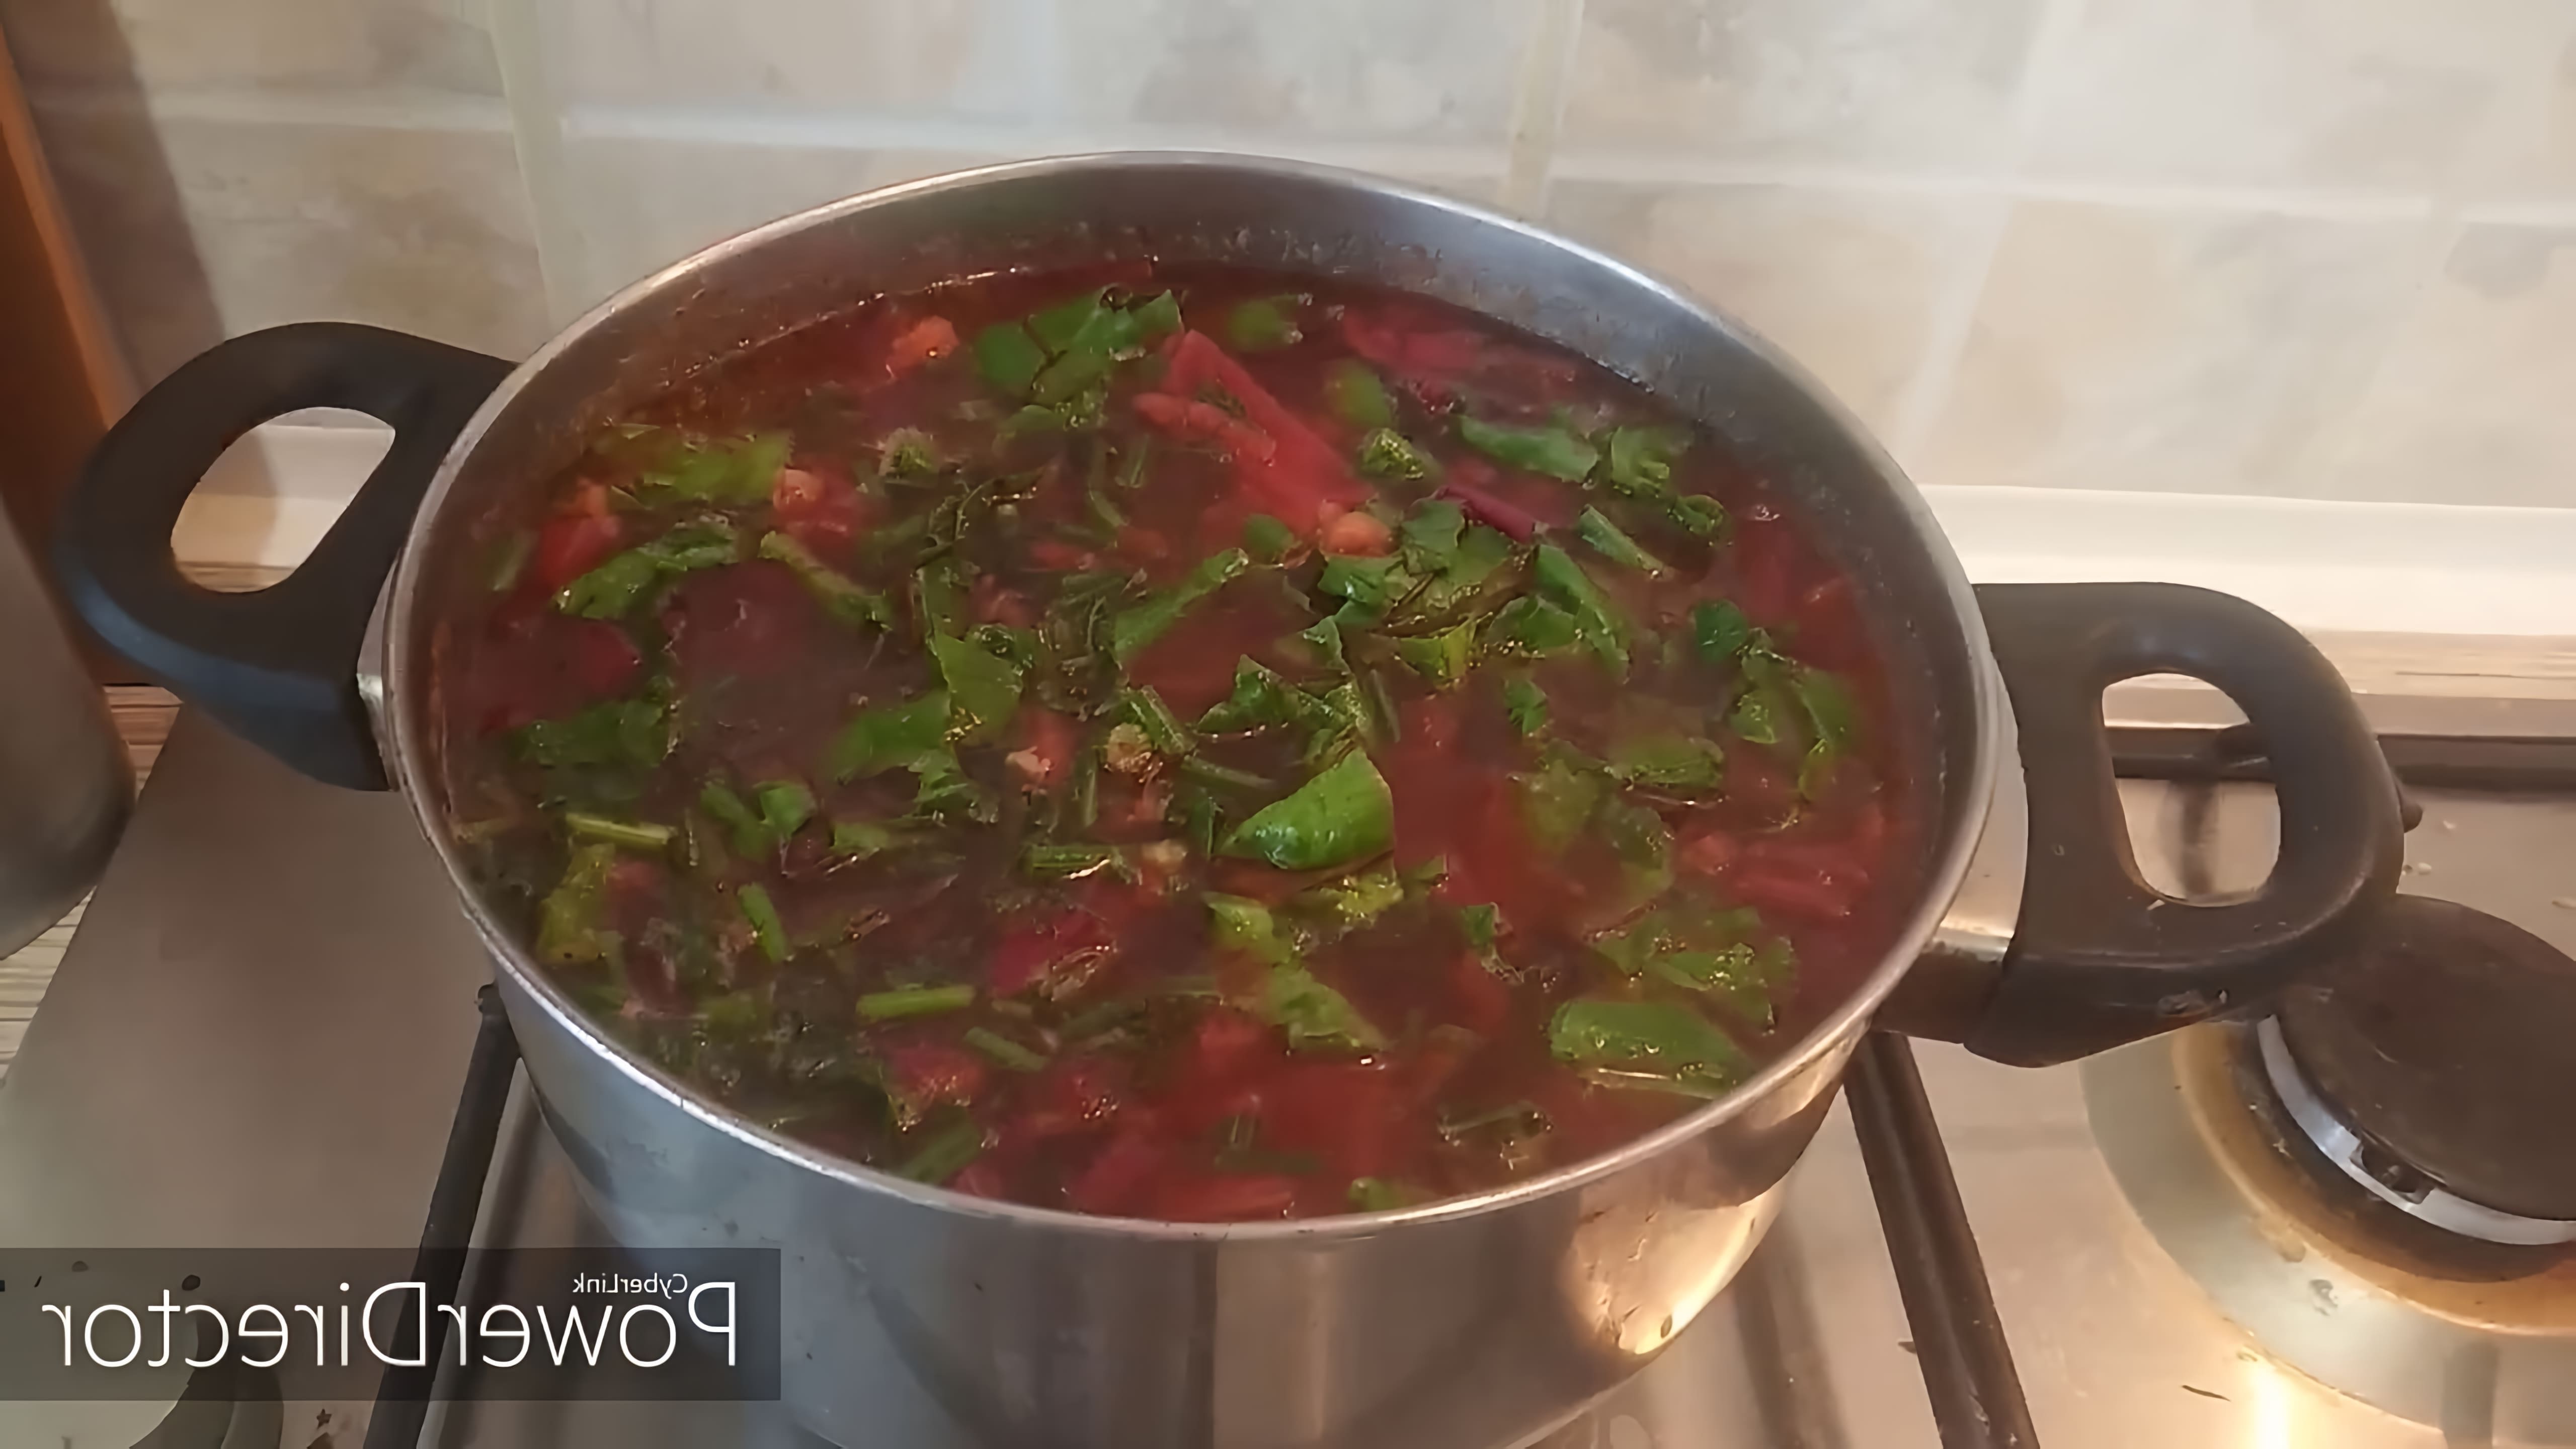 Видео посвящено приготовлению супа борщ с листьями свёклы, который описывается как любимый летний суп в регионе